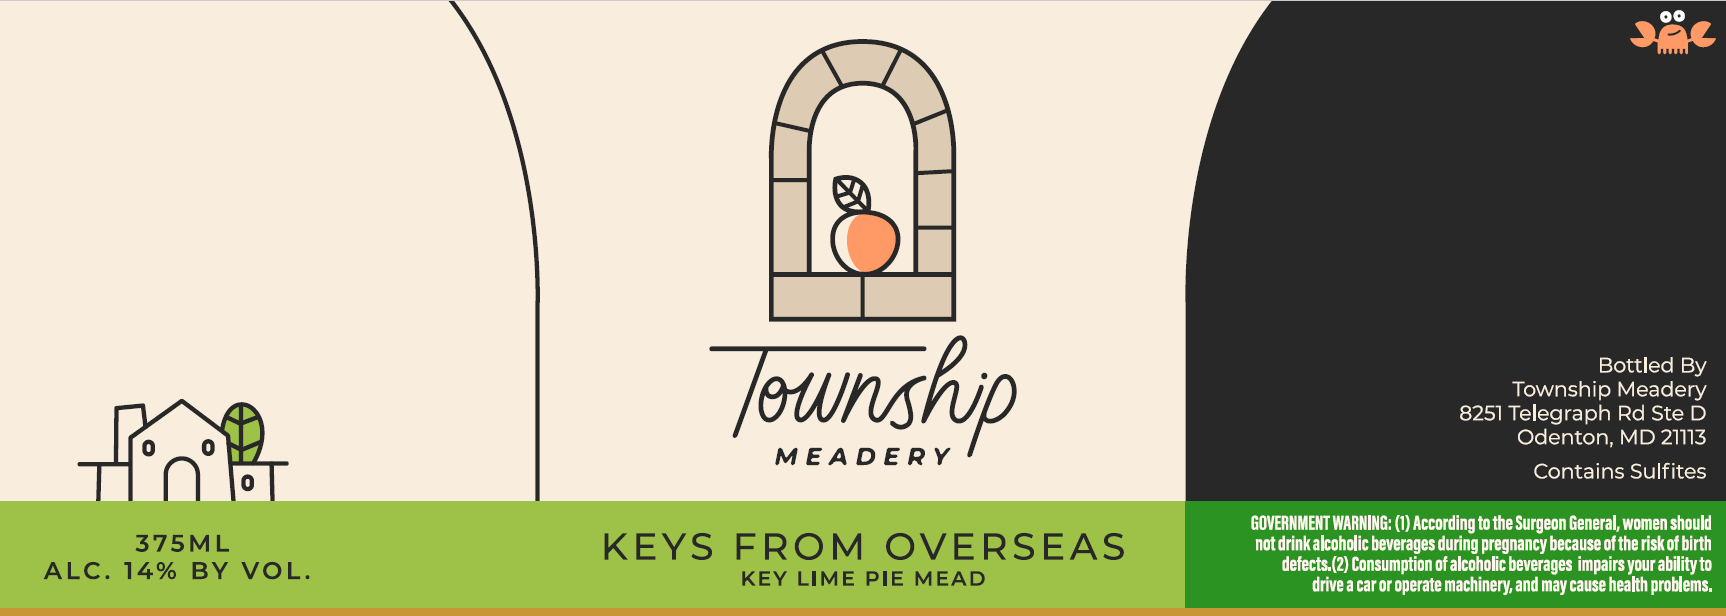 Township Meadery - Keys From Overseas 375ml Bottle